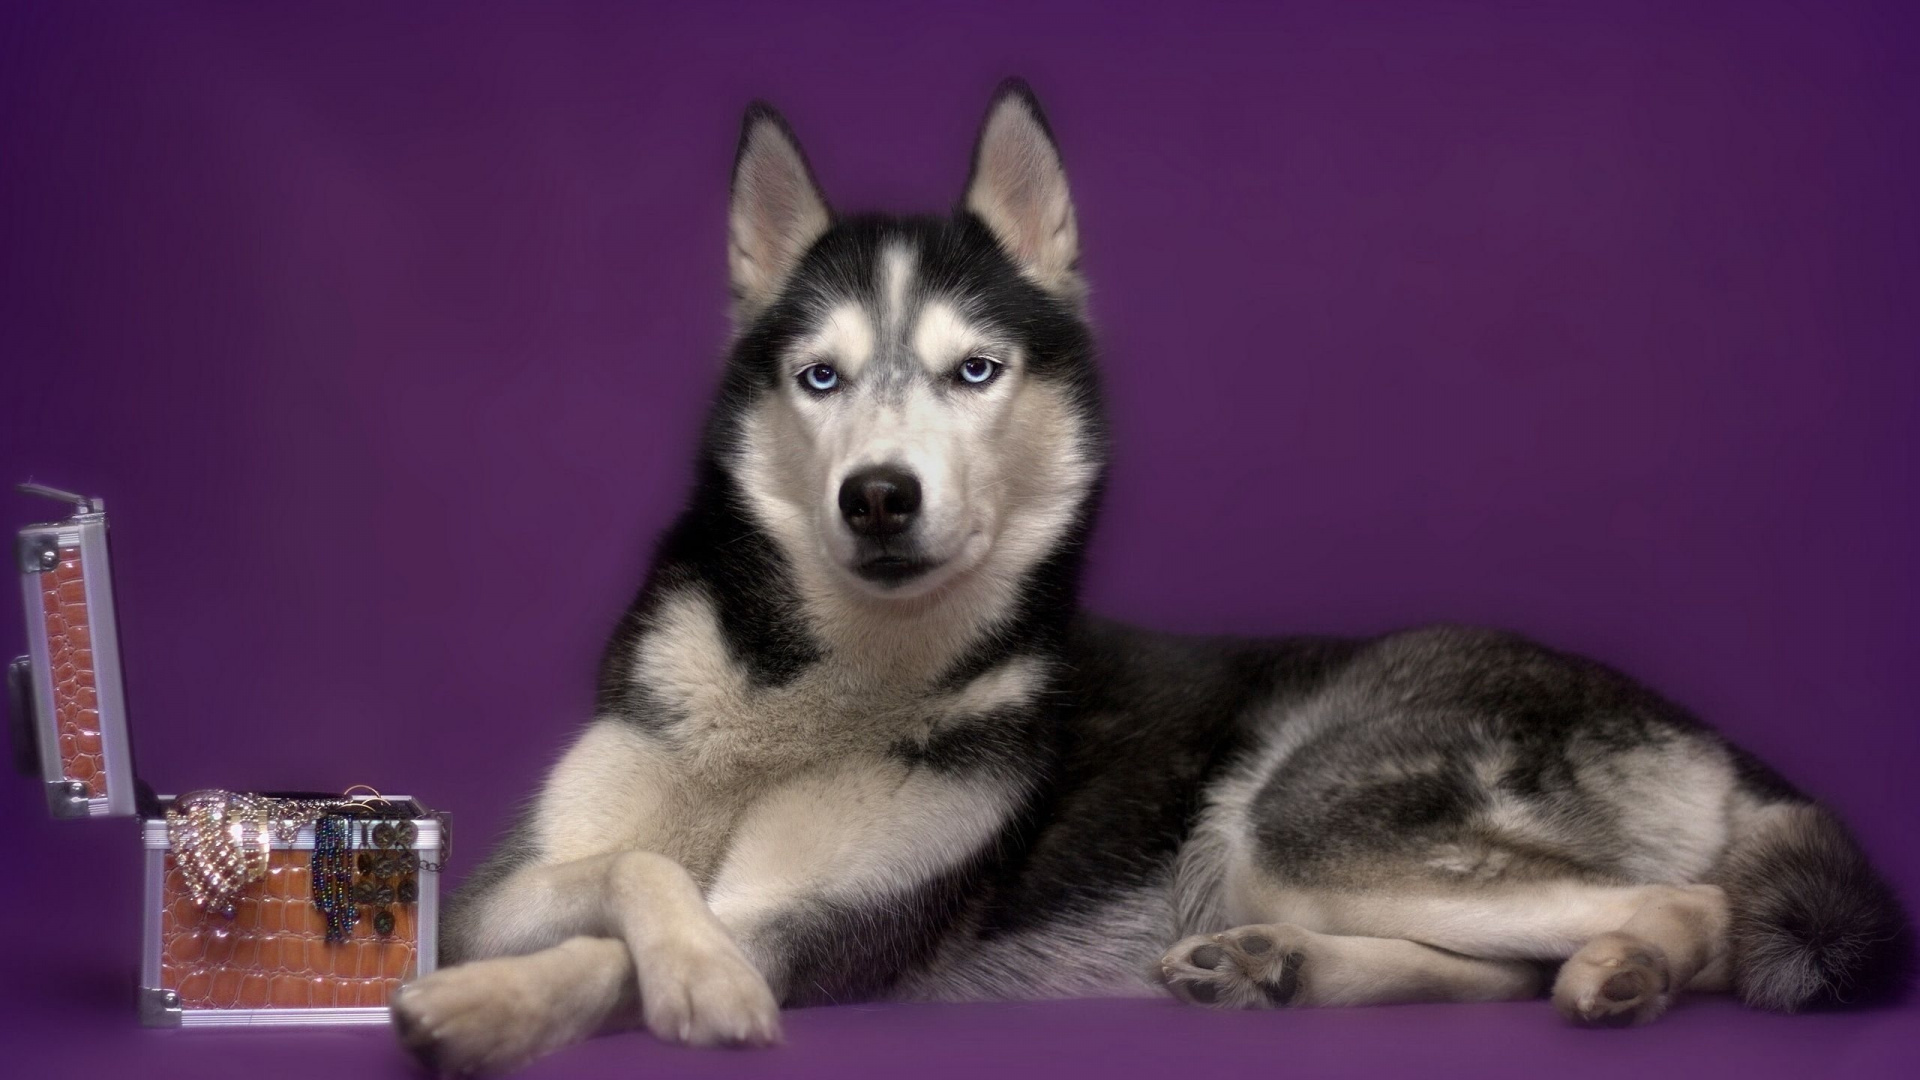 阿拉斯加雪橇犬, 小狗, 雪橇狗, 萨哈林赫斯基, 微型哈士奇 壁纸 1920x1080 允许